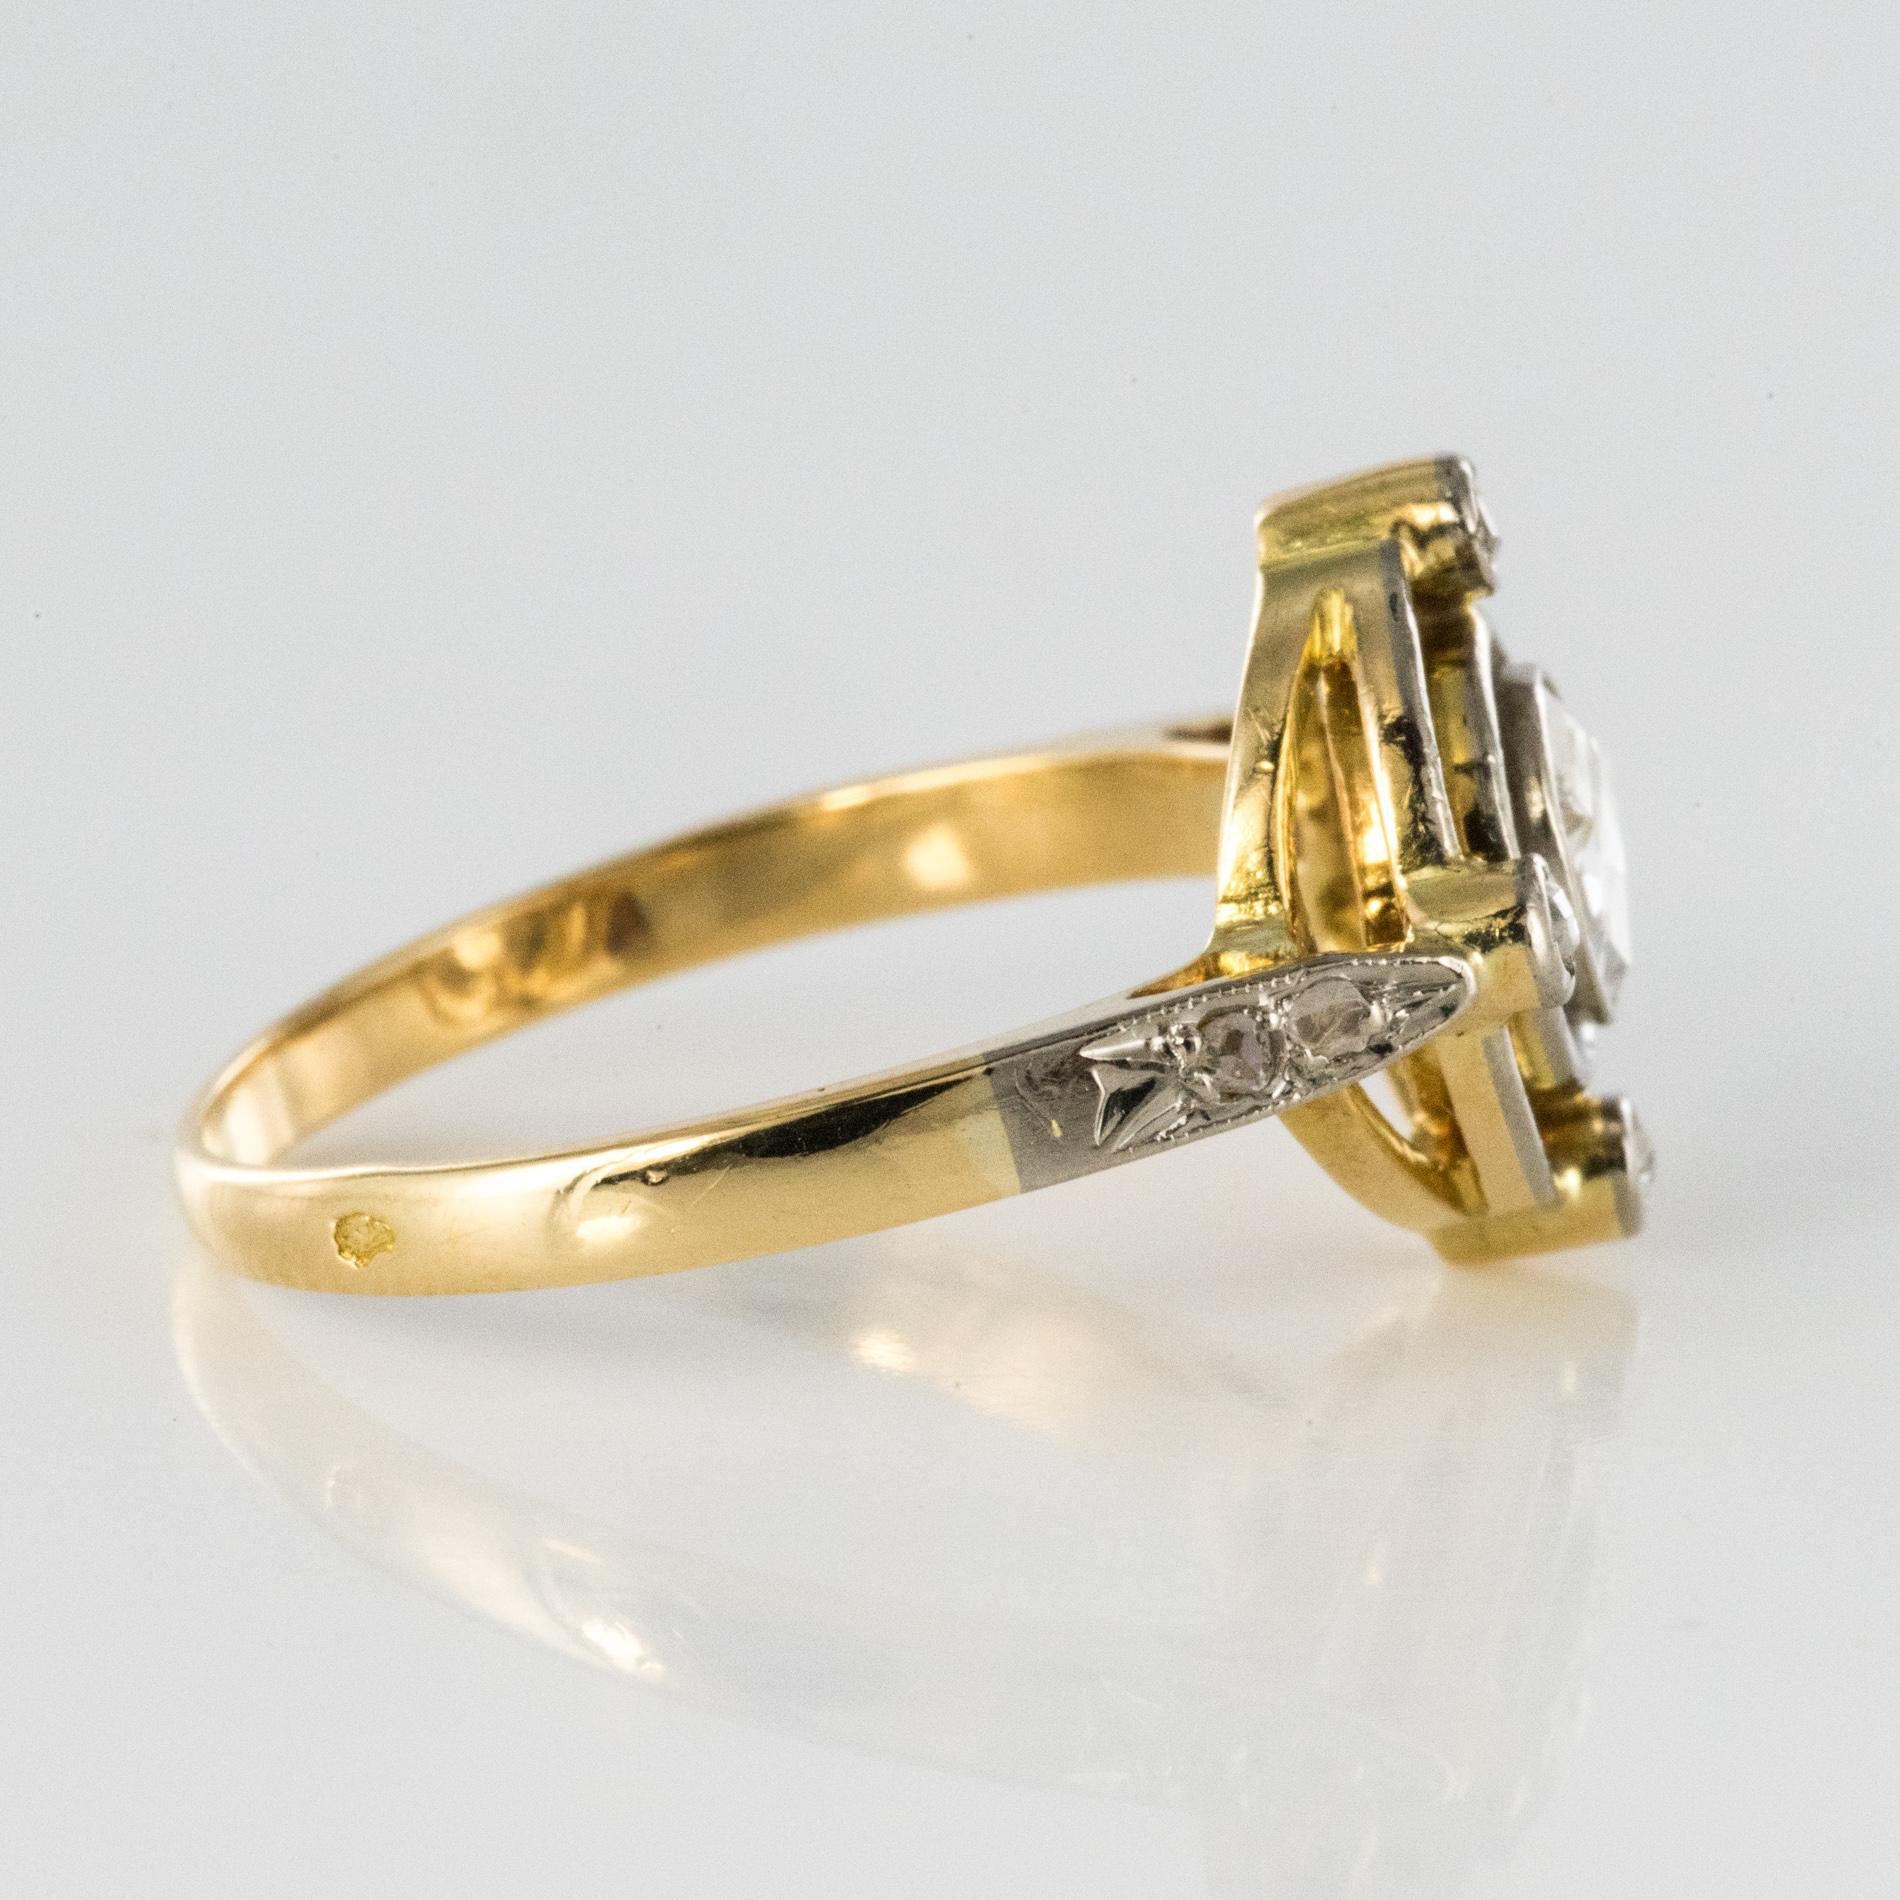 French 1890s 18 Karat Yellow Gold Rose-Cut Diamonds Ring 7